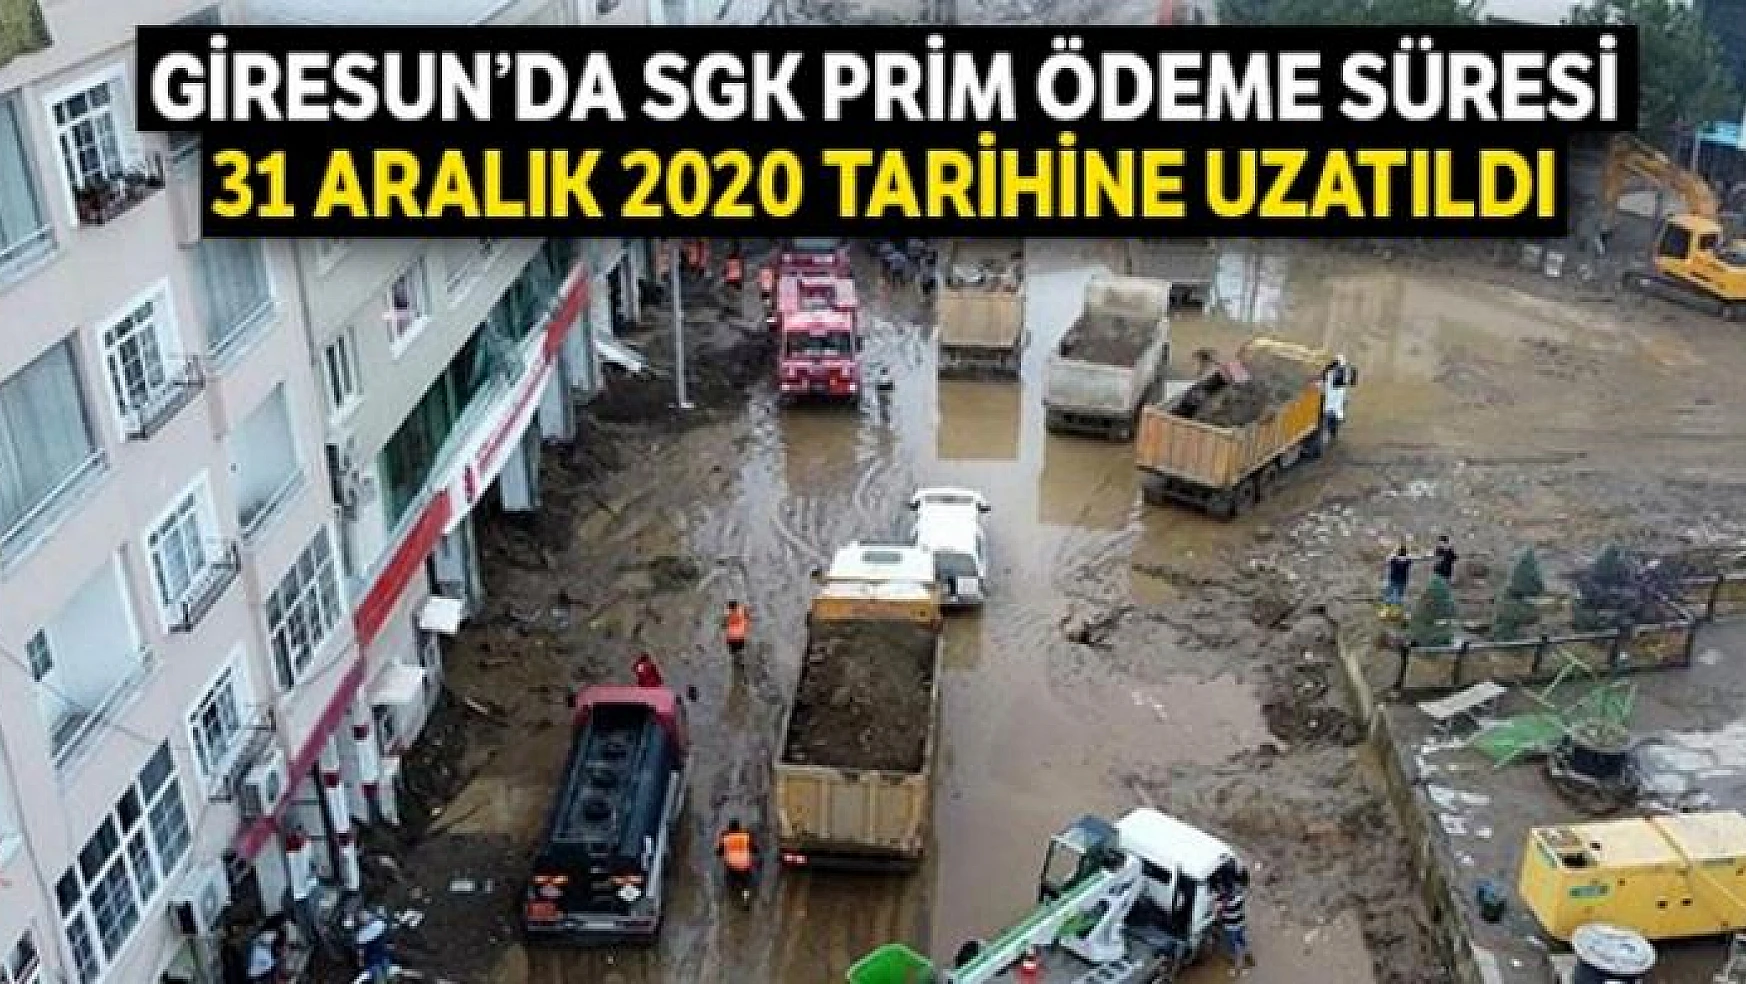 Giresun'da SGK prim ödeme süresi 31 Aralık 2020 tarihine uzatıldı